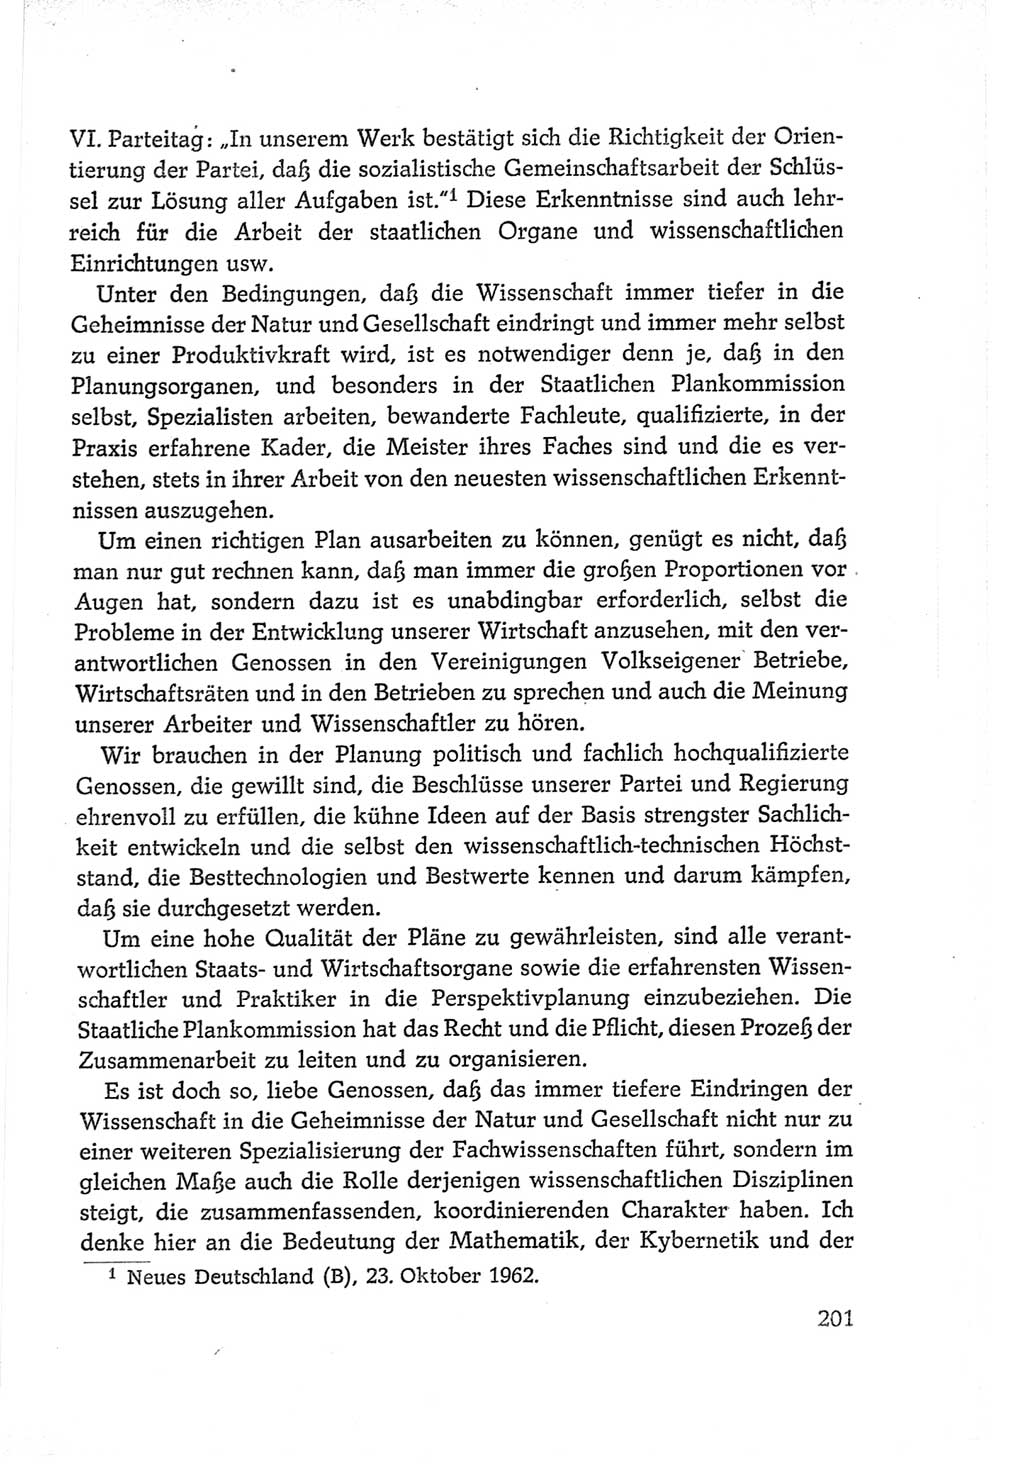 Protokoll der Verhandlungen des Ⅵ. Parteitages der Sozialistischen Einheitspartei Deutschlands (SED) [Deutsche Demokratische Republik (DDR)] 1963, Band Ⅱ, Seite 201 (Prot. Verh. Ⅵ. PT SED DDR 1963, Bd. Ⅱ, S. 201)